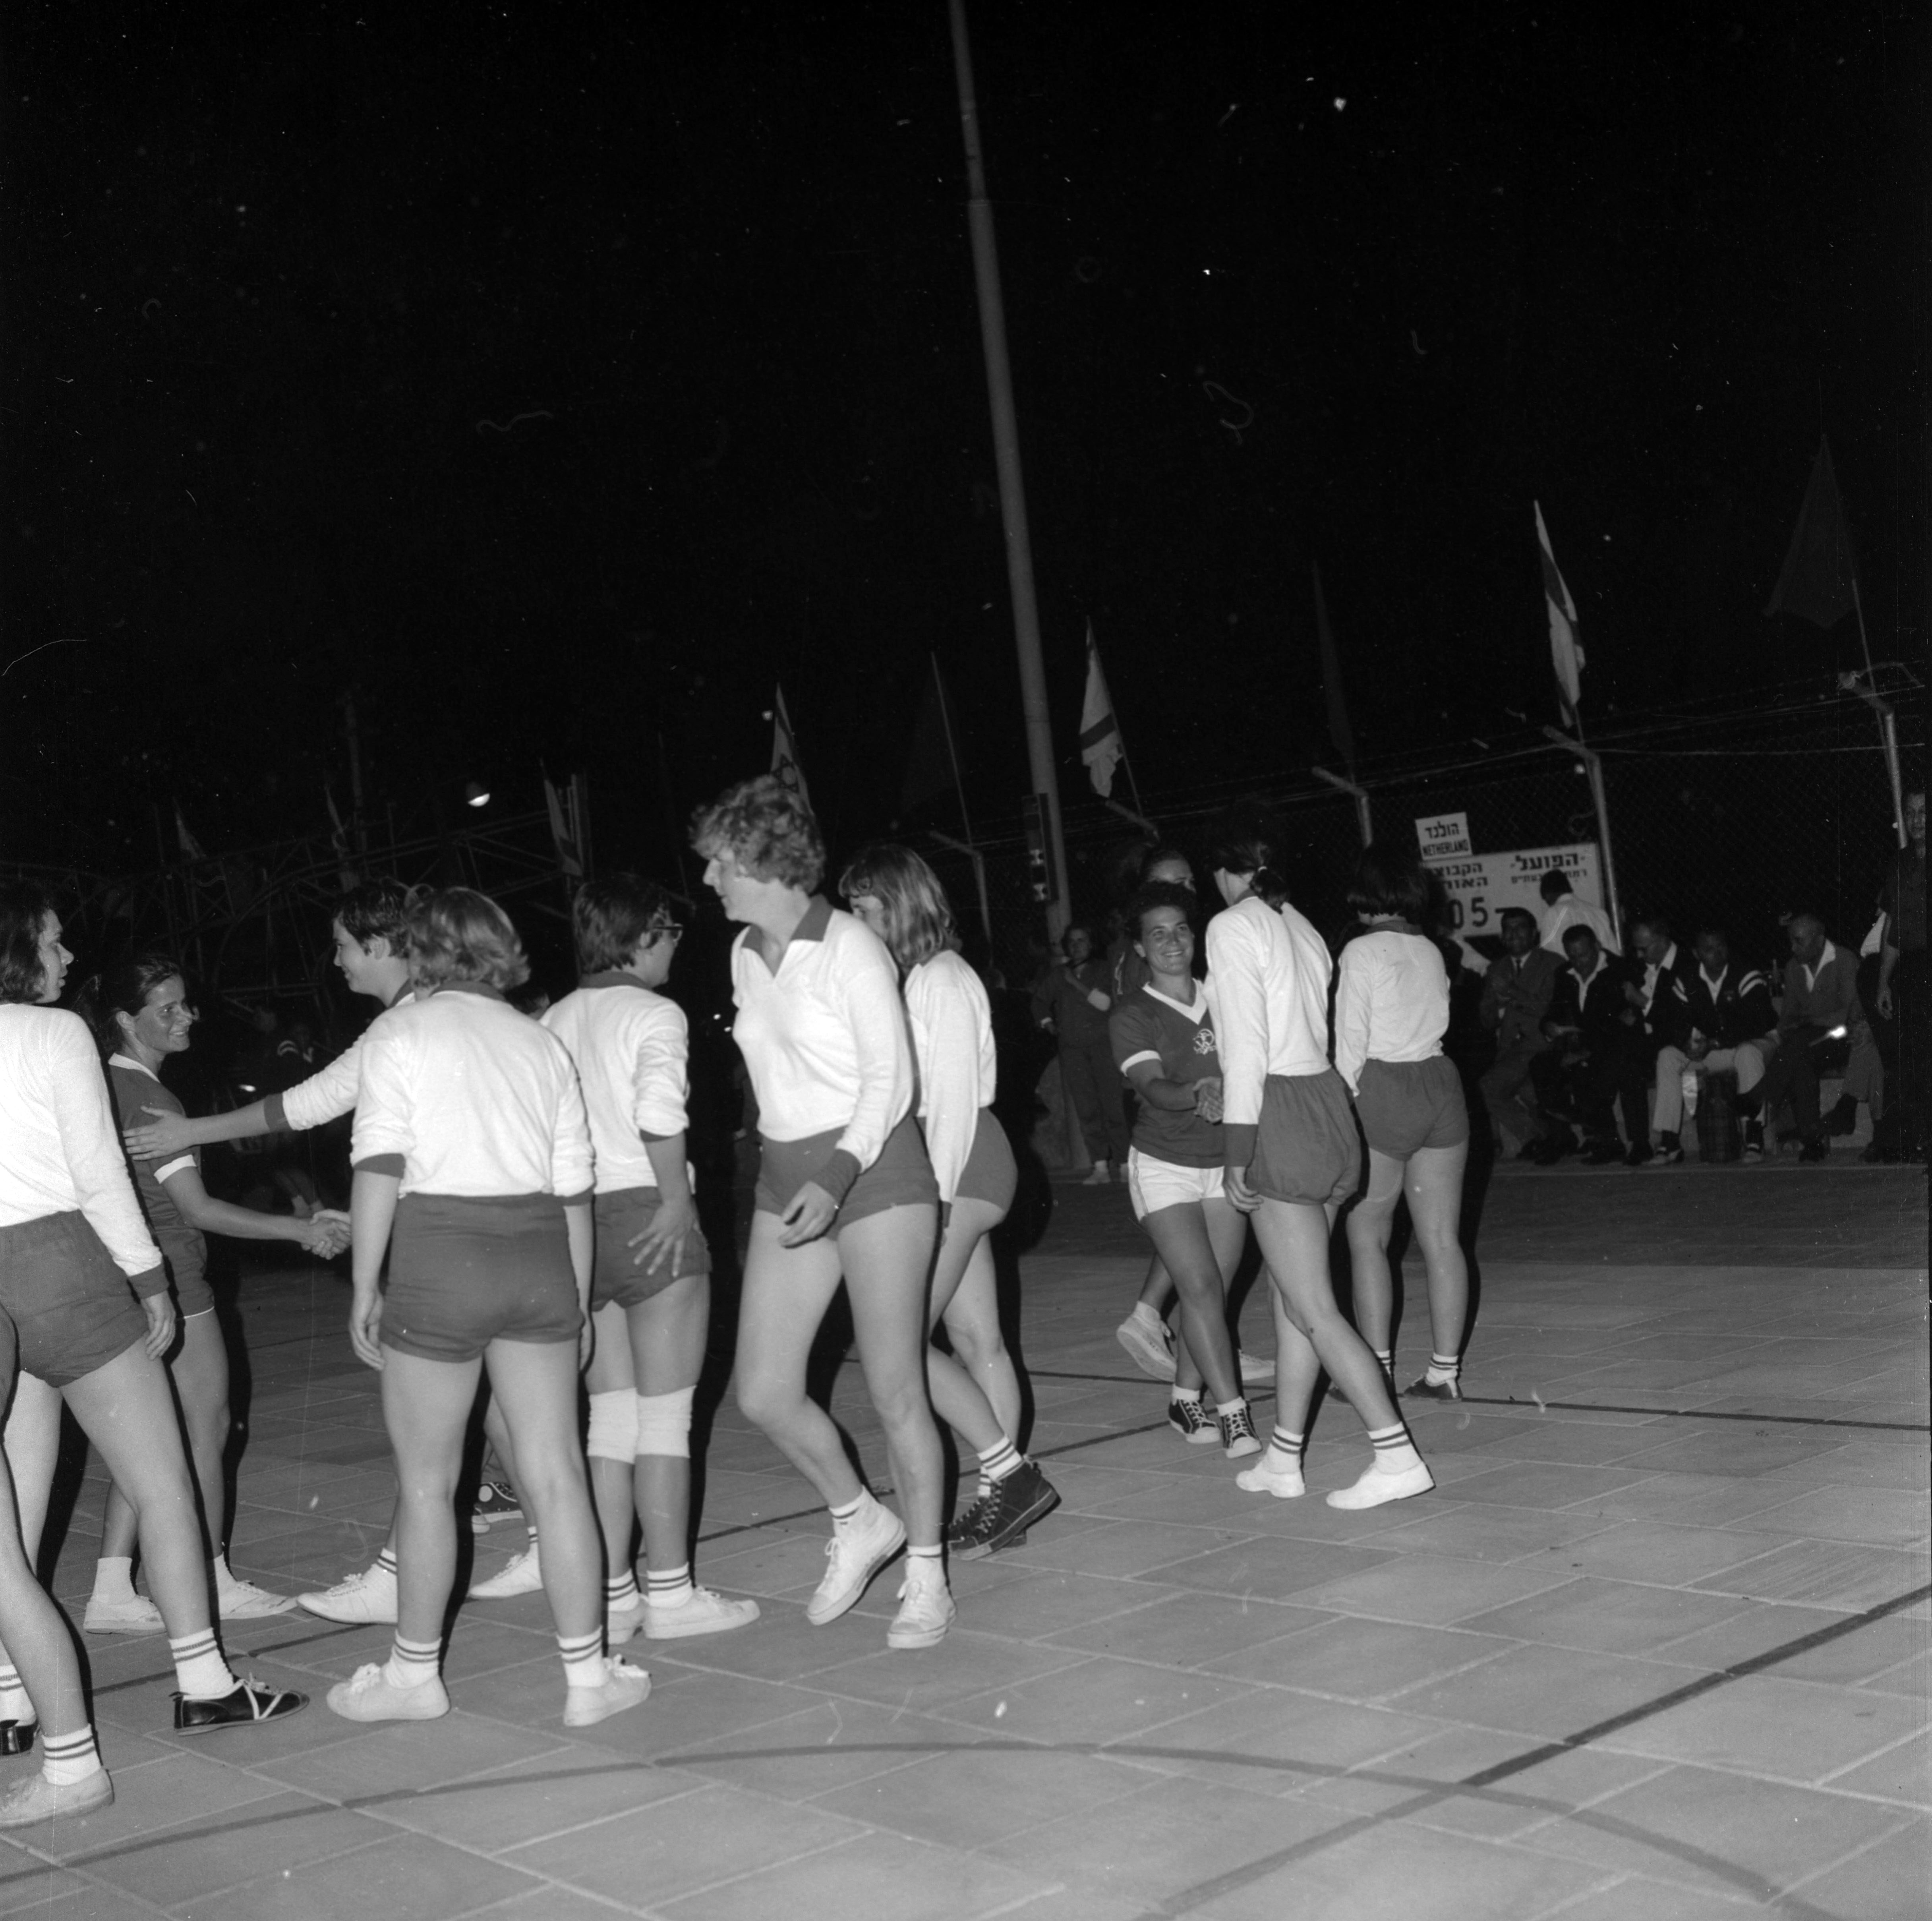  הולנד-ישראל, כינוס הפועל, מאי; 1966